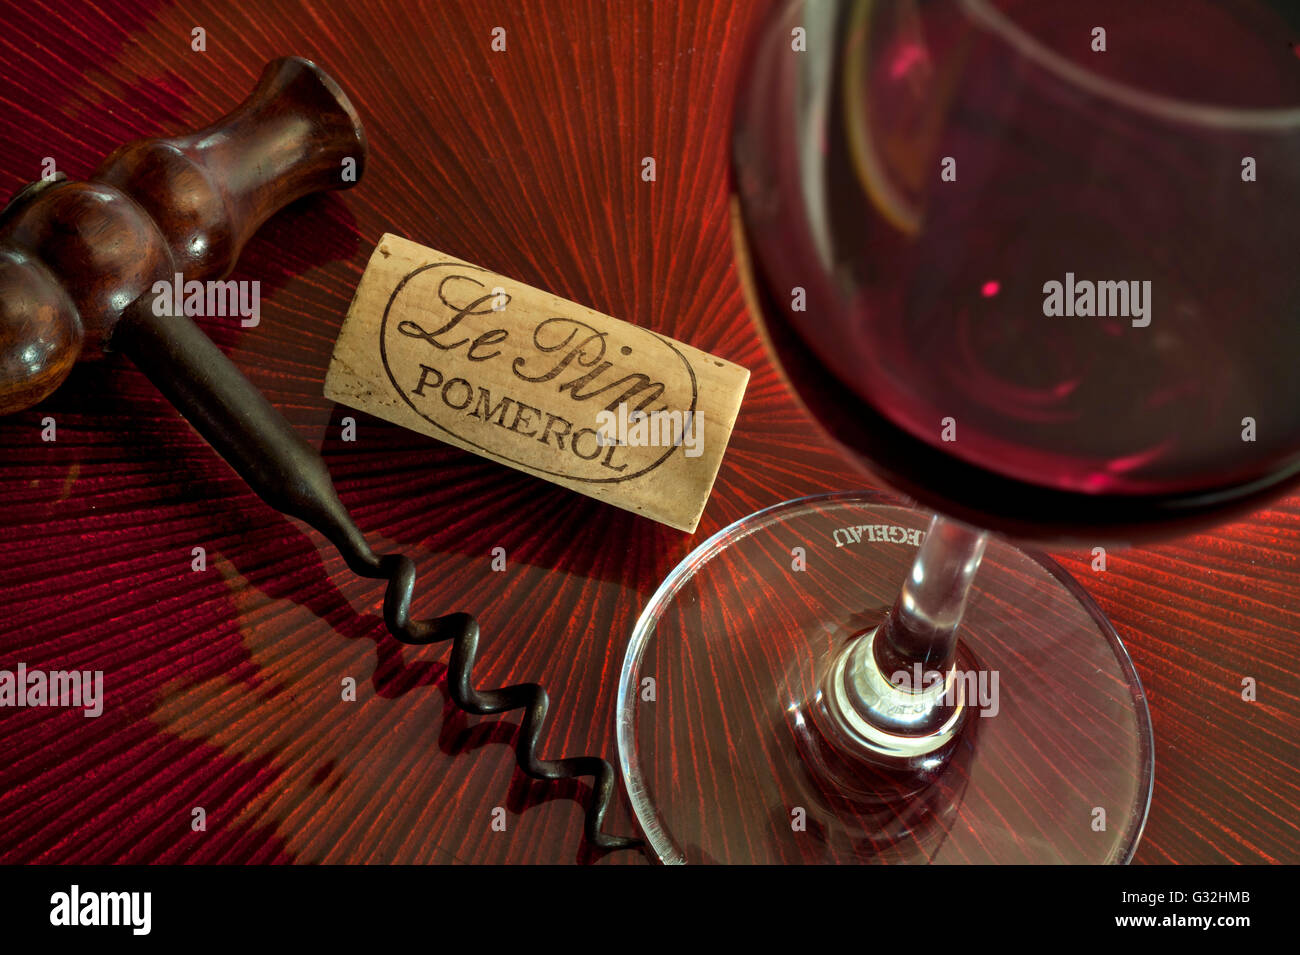 CHÂTEAU LE PIN Pomerol luxe dégustation de vins concept avec Verre à vin rouge traditionnel et bouchon de Château le PIN Bordeaux France Banque D'Images